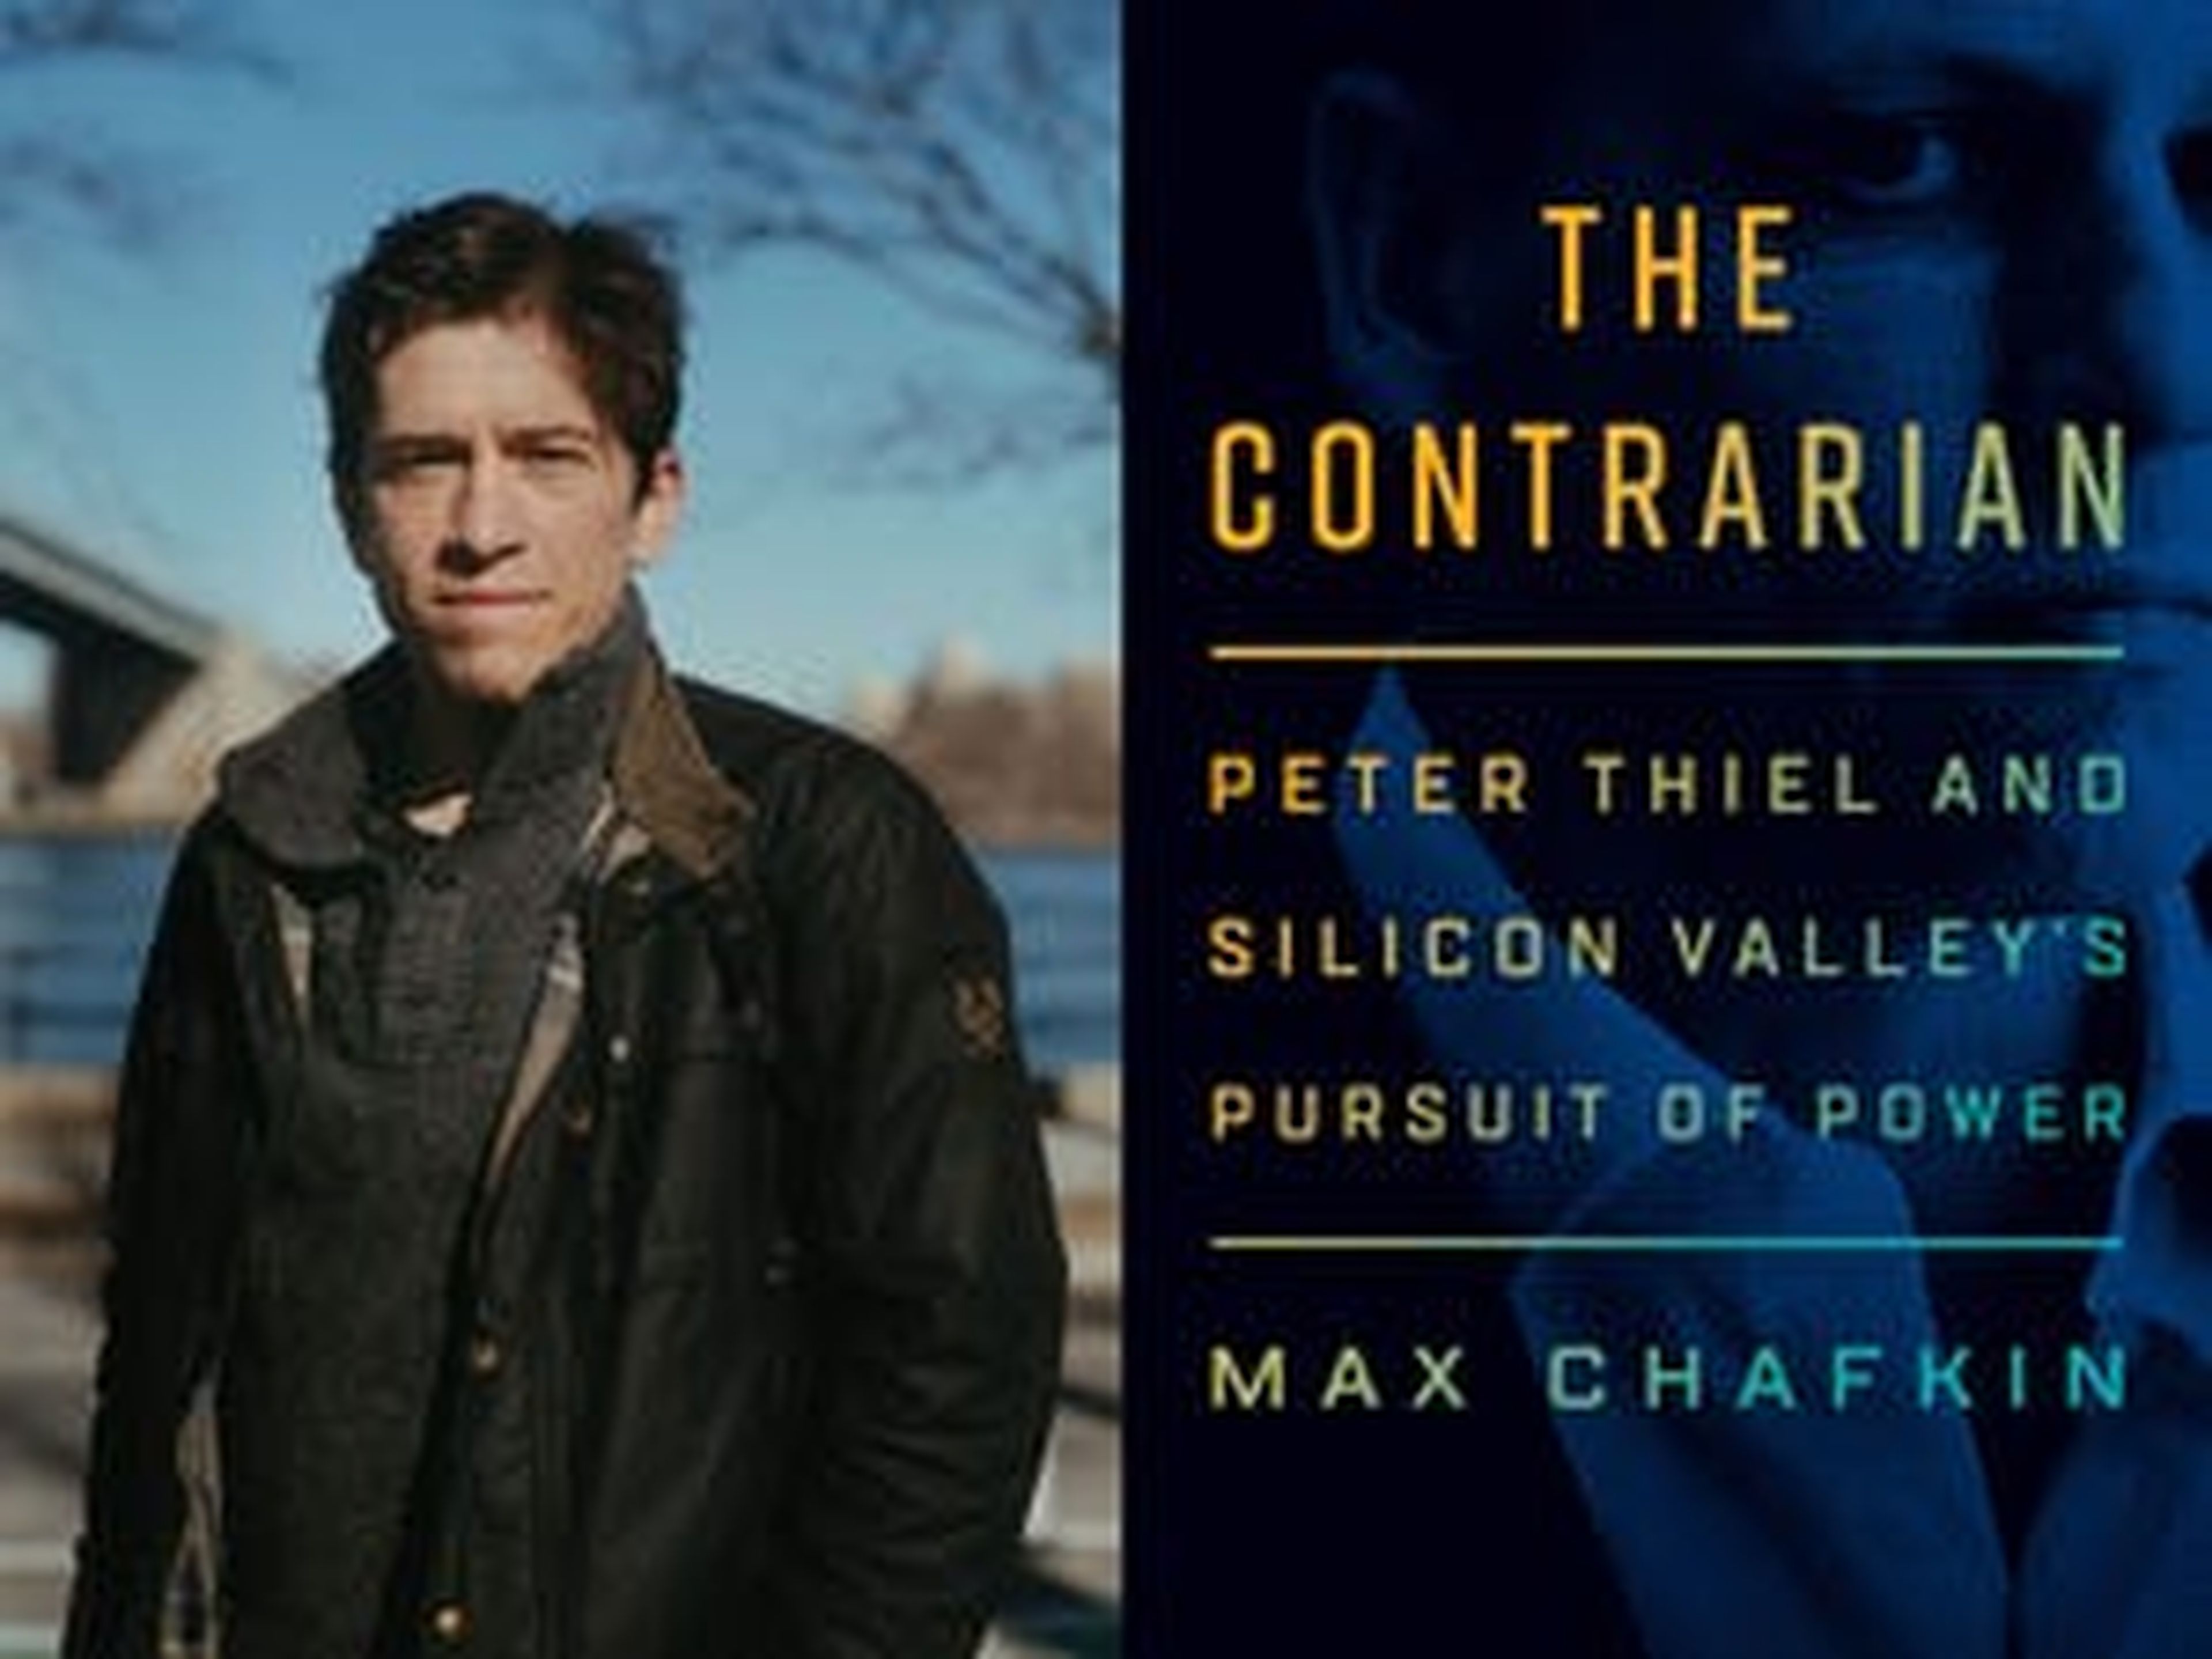 El autor, Max Chafkin, y la portada del libro The Contrarian.